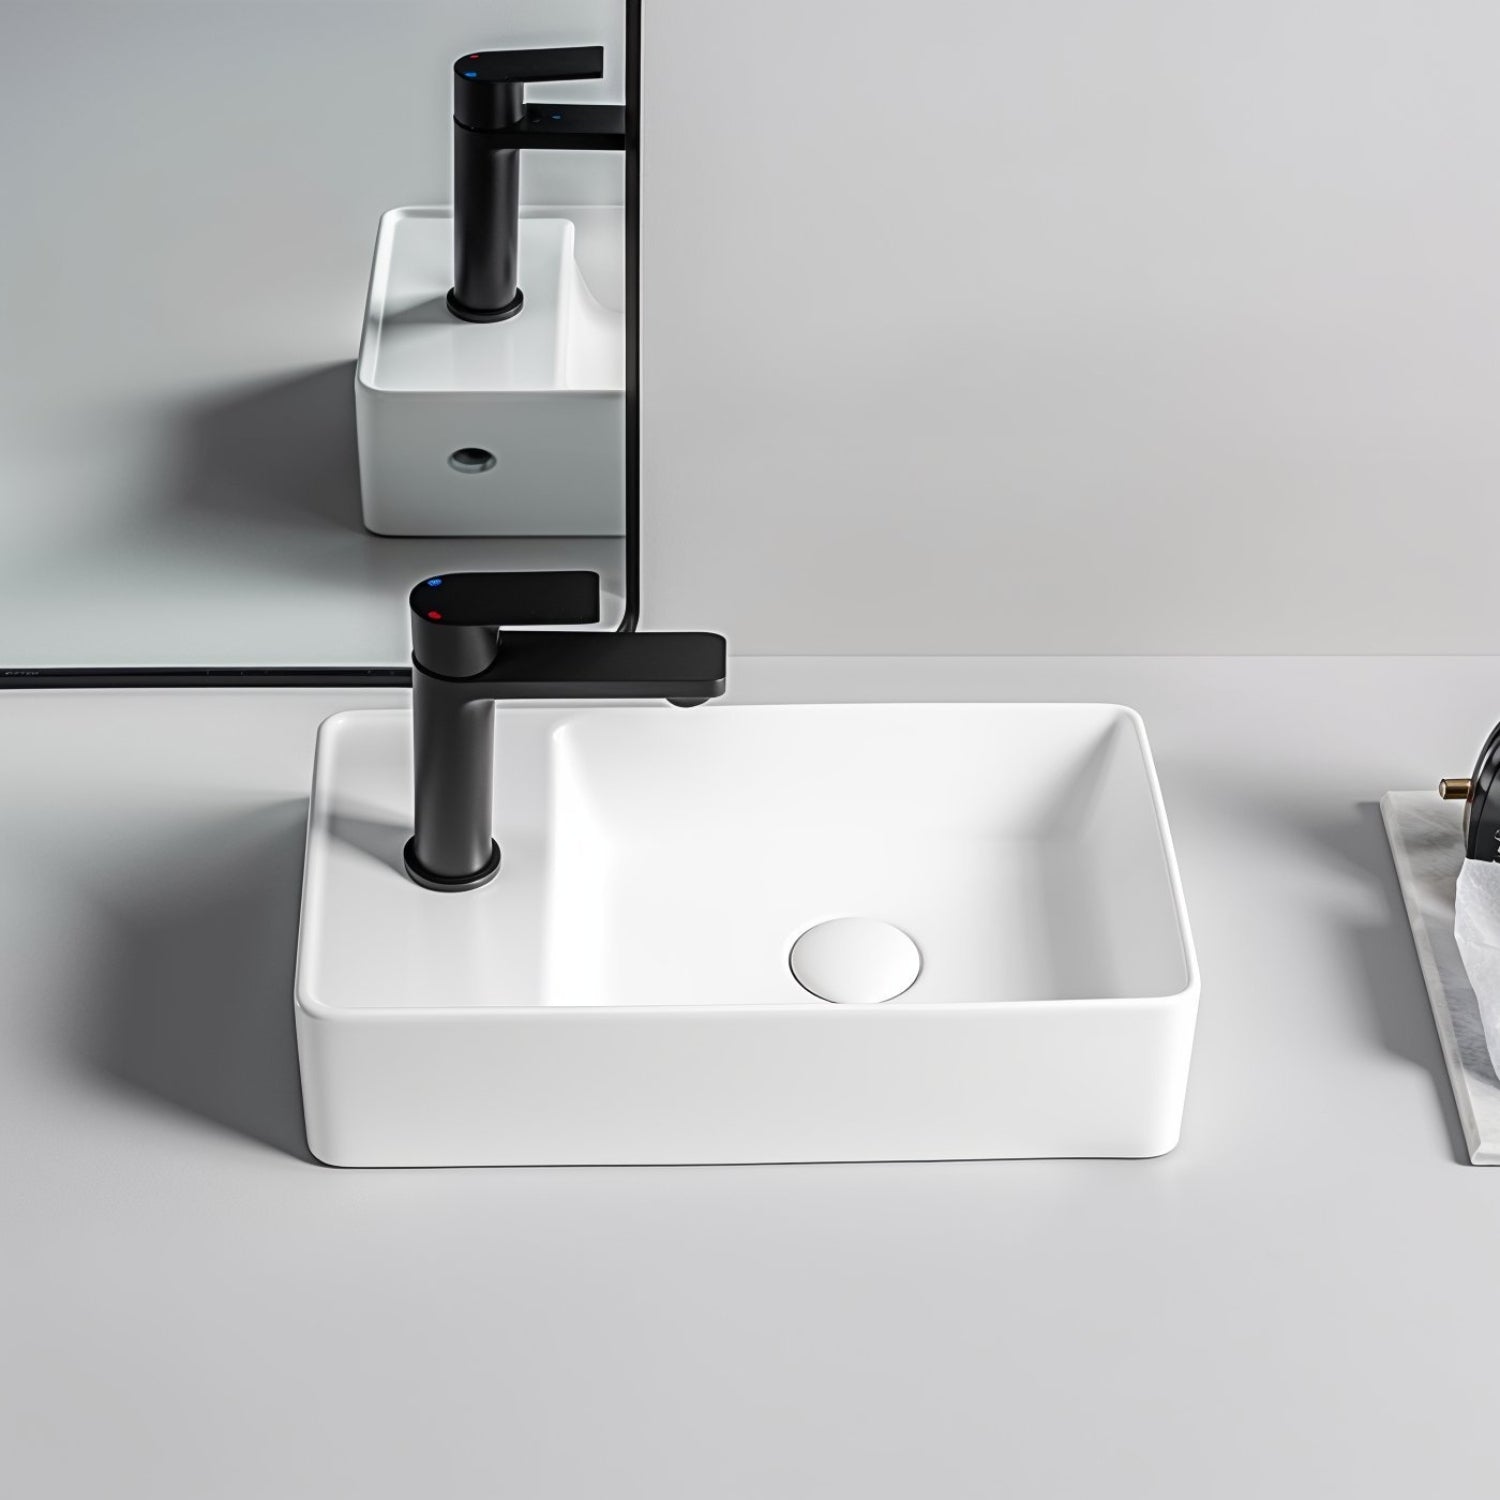 Gäste WC Waschbecken SOHO 2.0 in 46 x 25 x 12 cm aus feinster Keramik für Wandmontage oder als Aufsatzwaschbecken mit Hahnloch